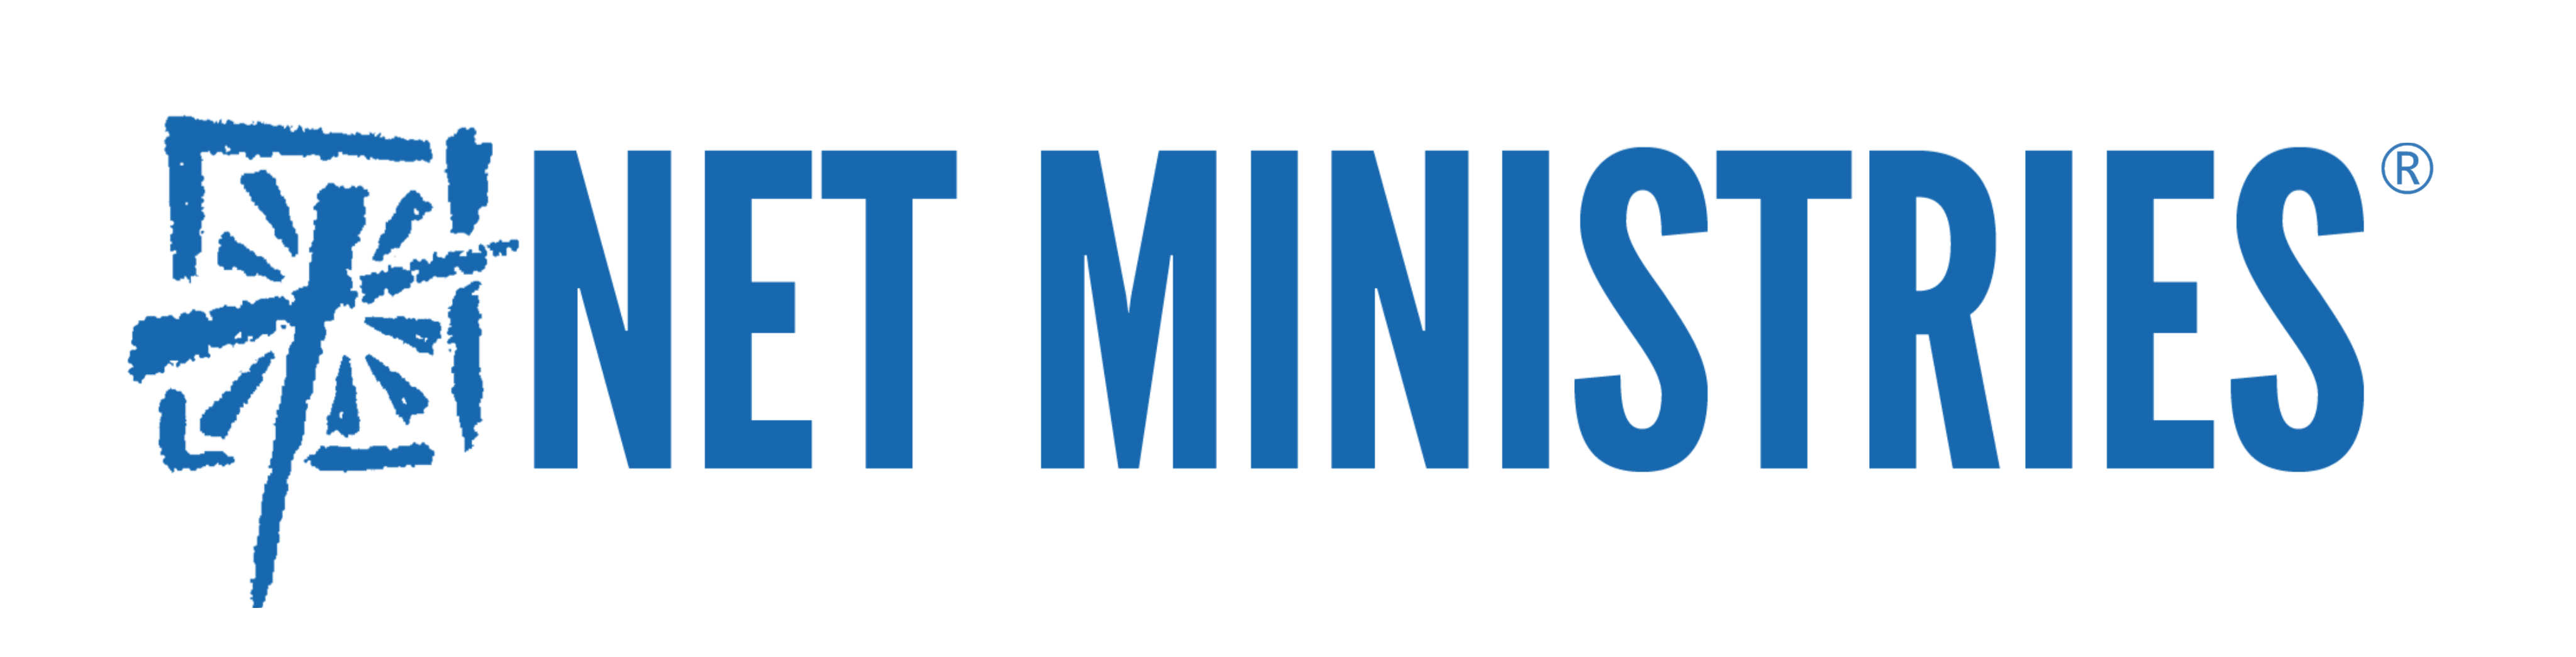 NET Registered Logo blue